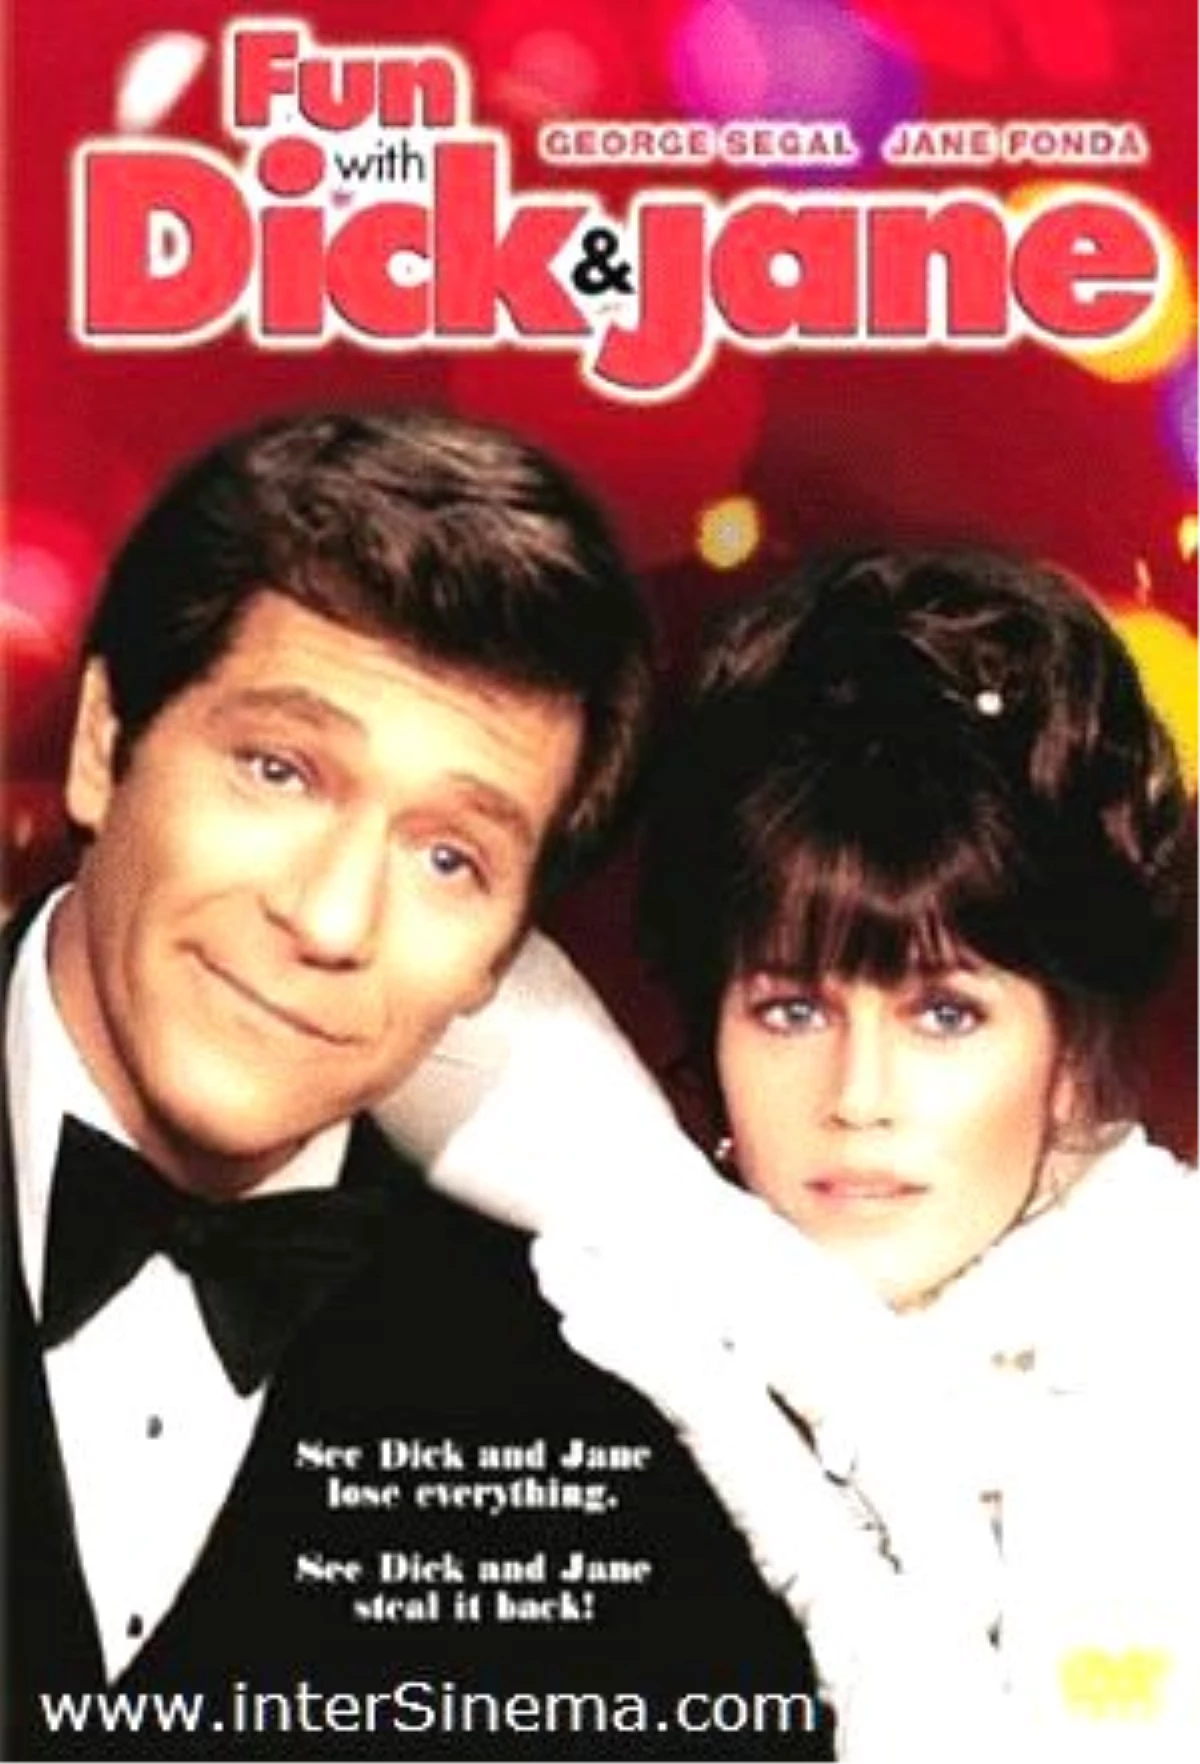 Dick ve Jane İşbaşında Filmi